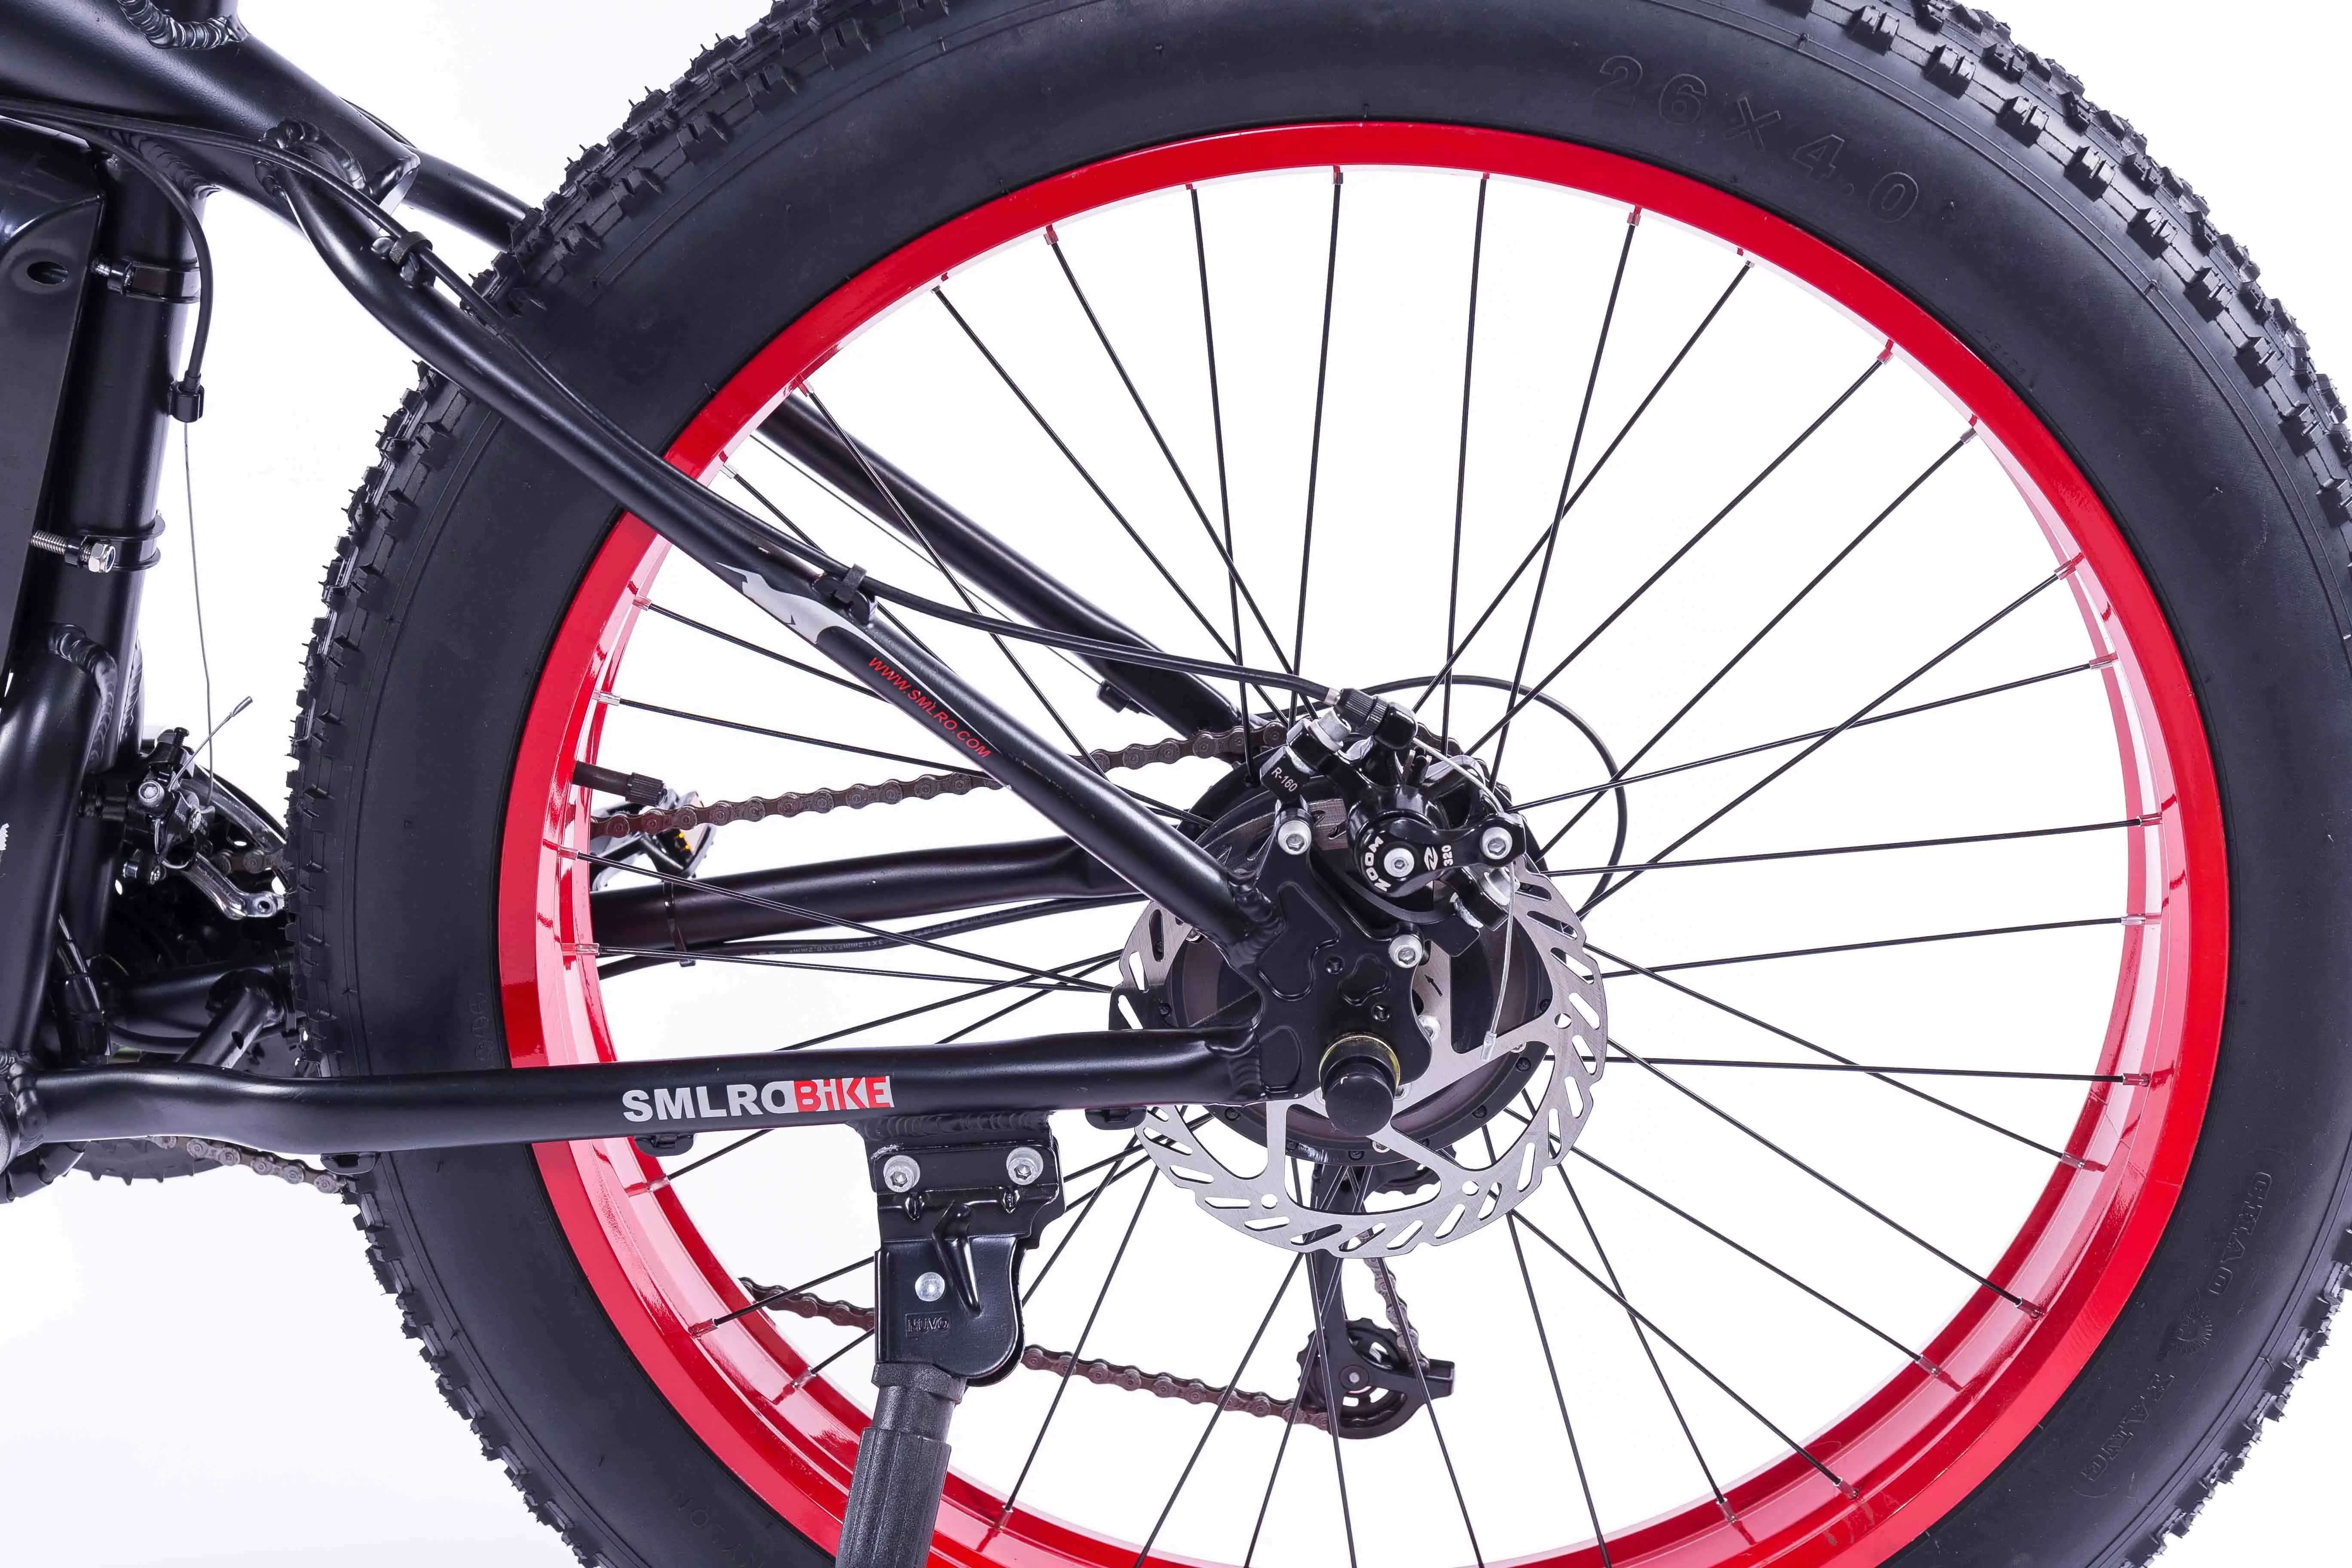 26 дюймов с толстыми покрышками Байк, способный преодолевать Броды для горного велосипеда 500 Вт Электрический велосипед со съемной 48V литиевая-Iion Батарея